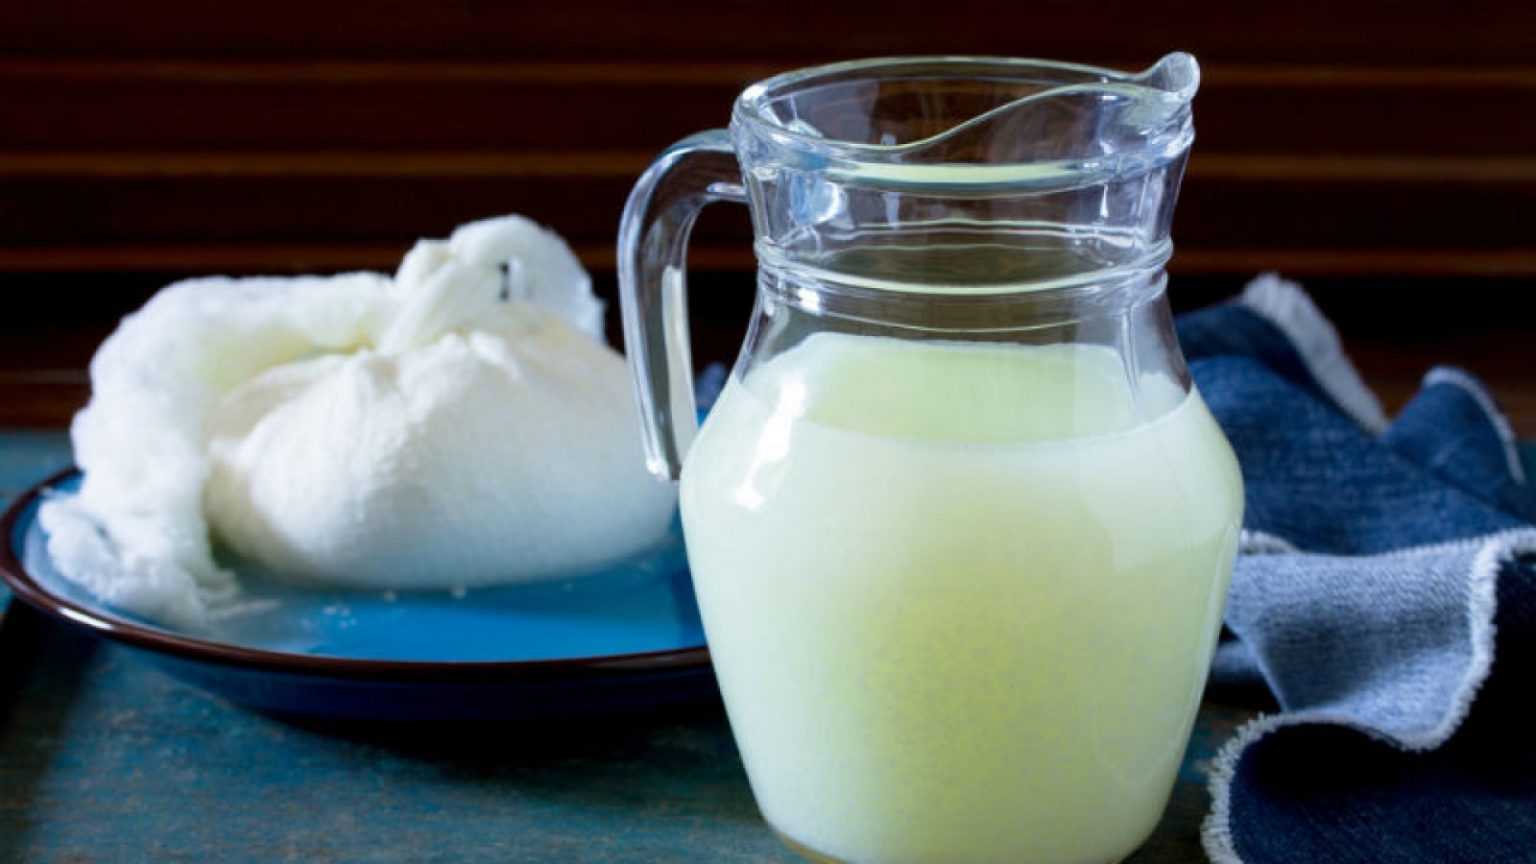 Нужно ли будущей маме пить молоко Молоко во время беременности: польза и вред Сколько молока нужно выпивать беременной